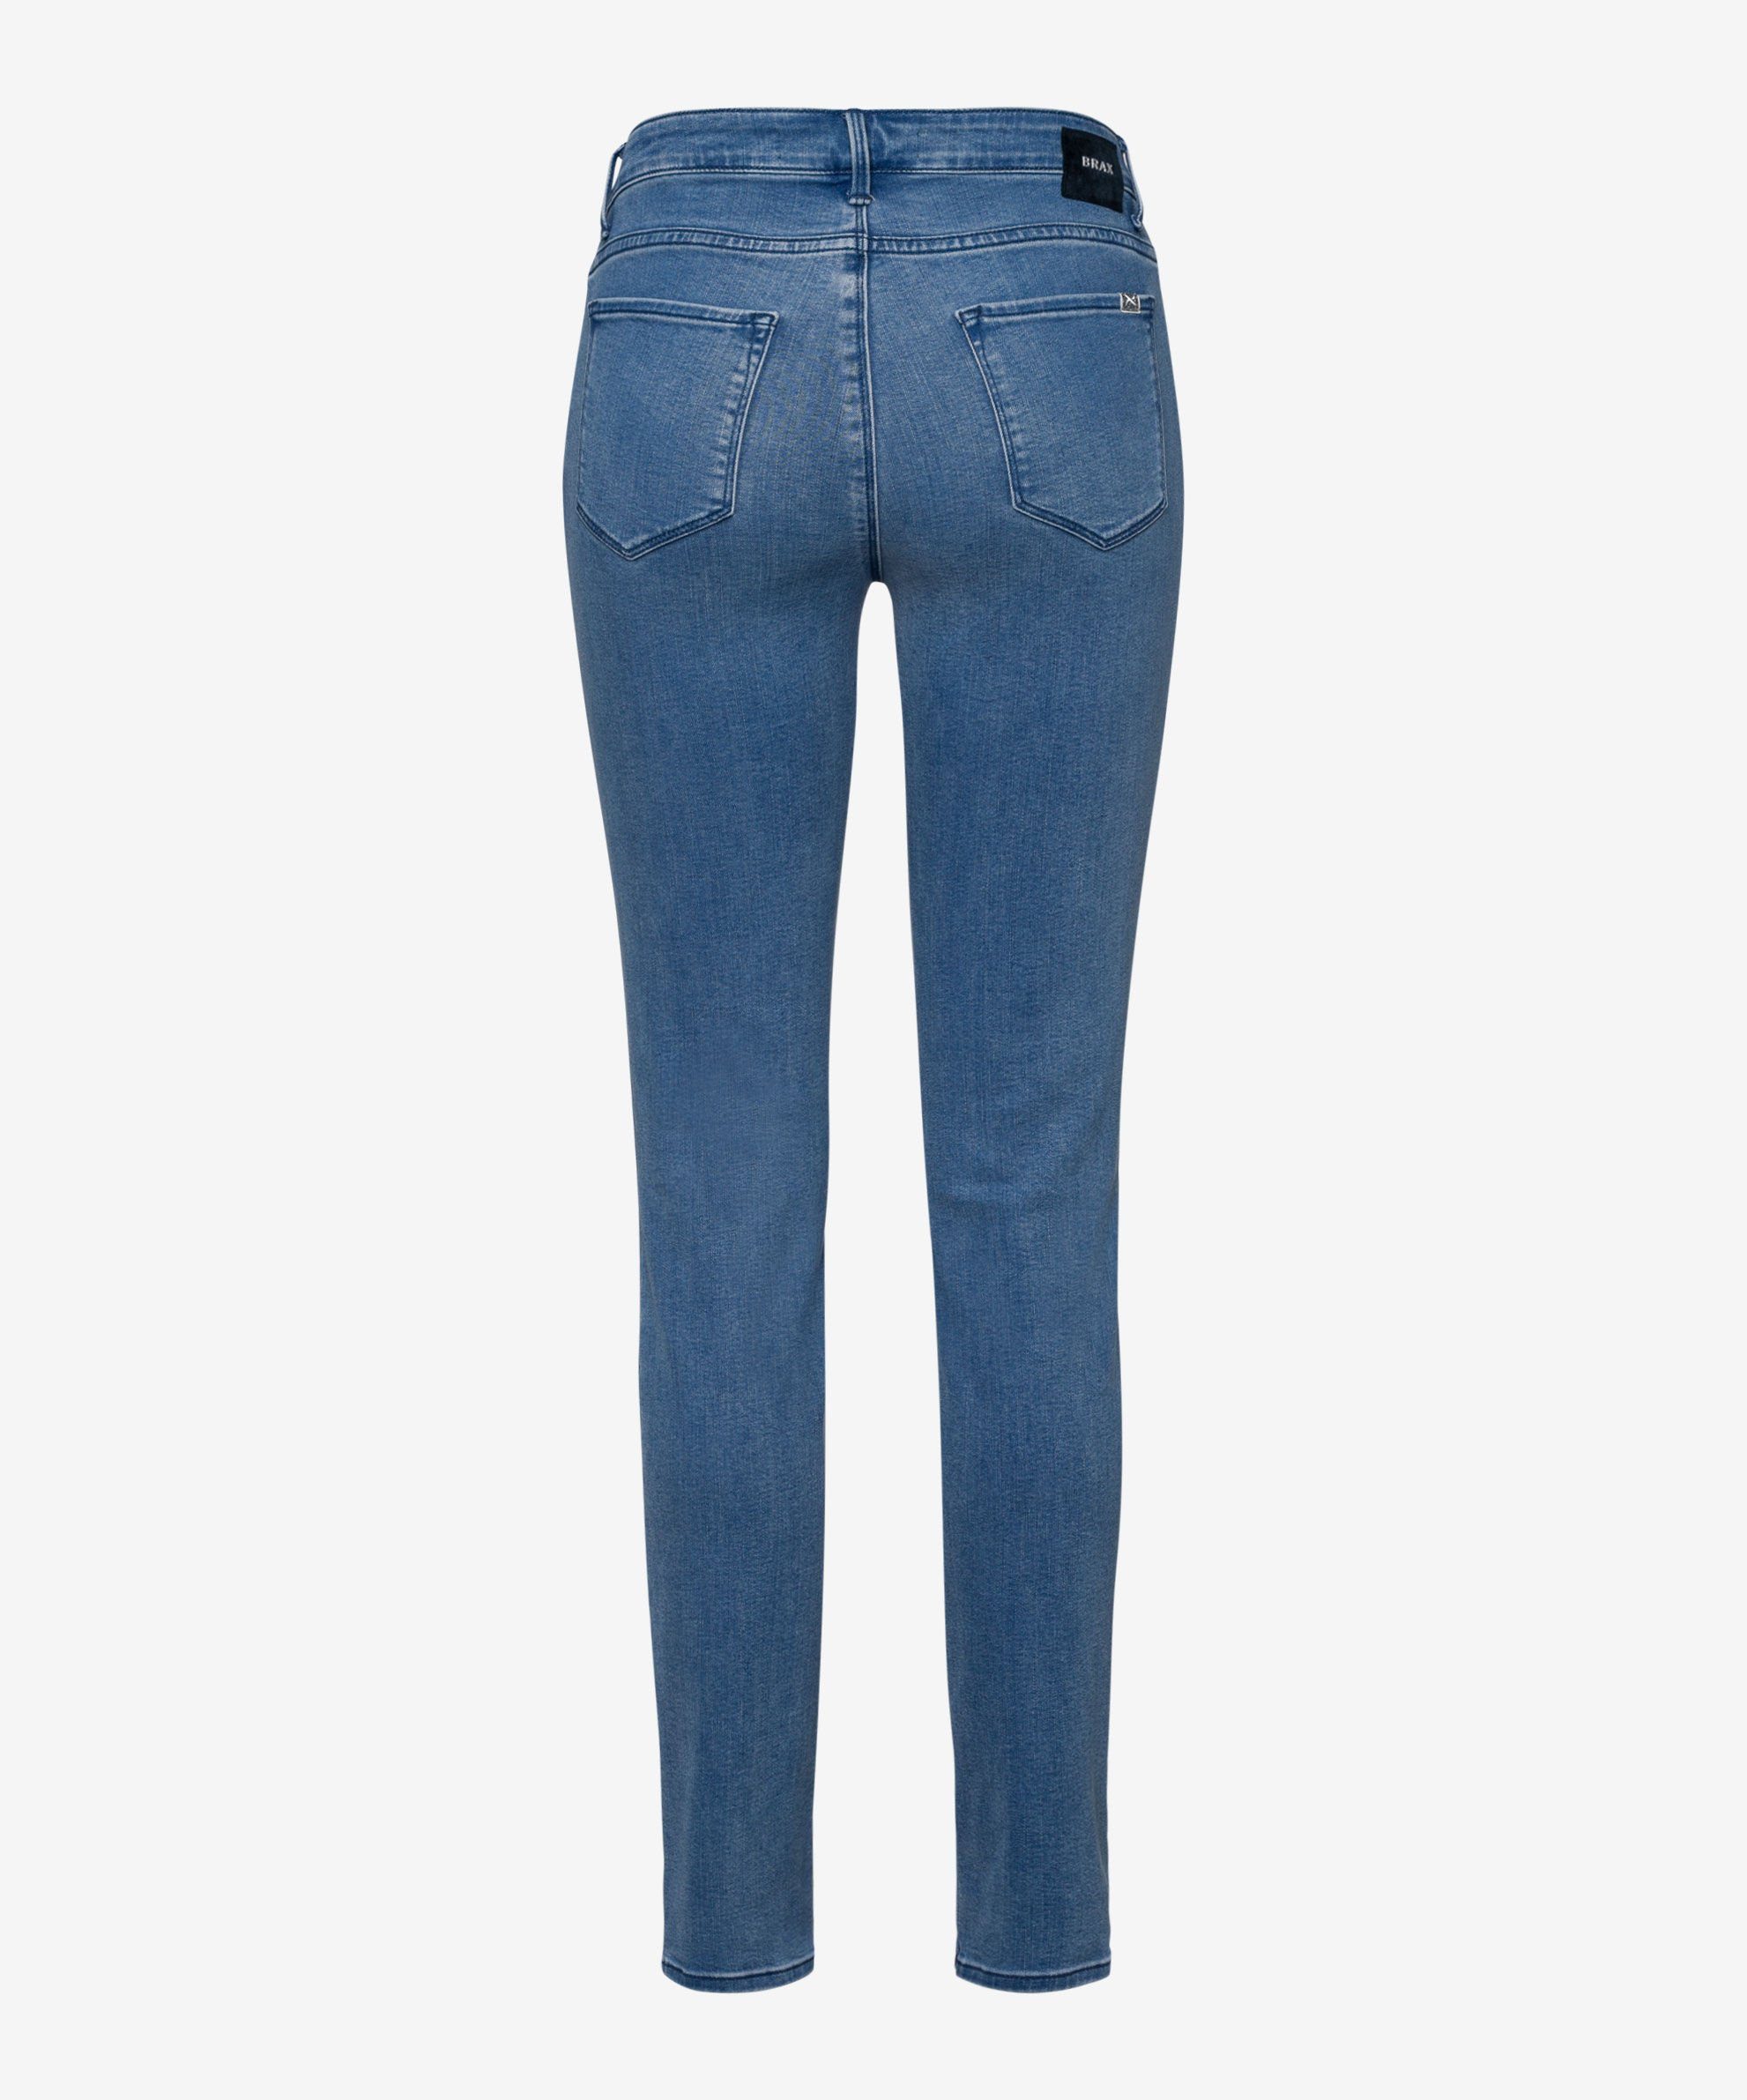 Brax Skinny-fit-Jeans Five-Pocket-Röhrenjeans used blue light